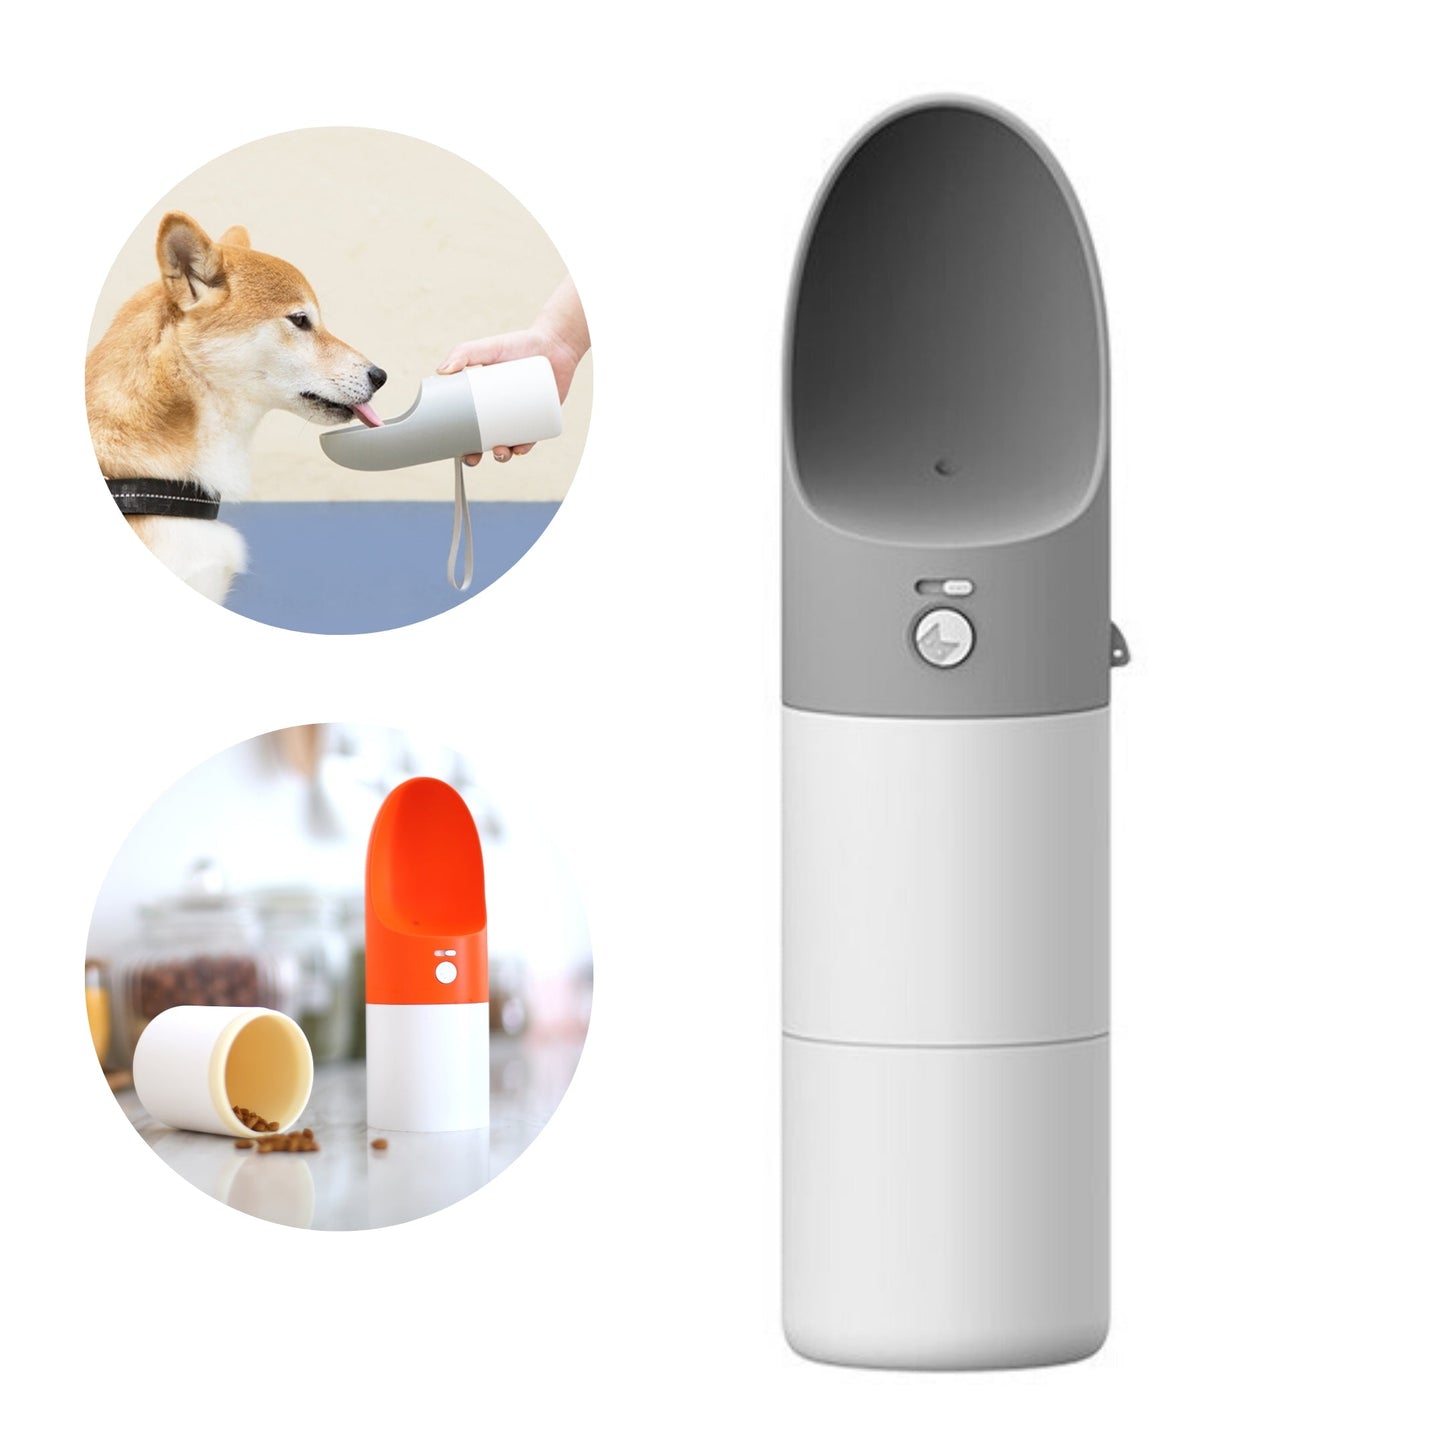 Instachew Rover Pet Travel Bottle, Dog water bottle - Almondscove